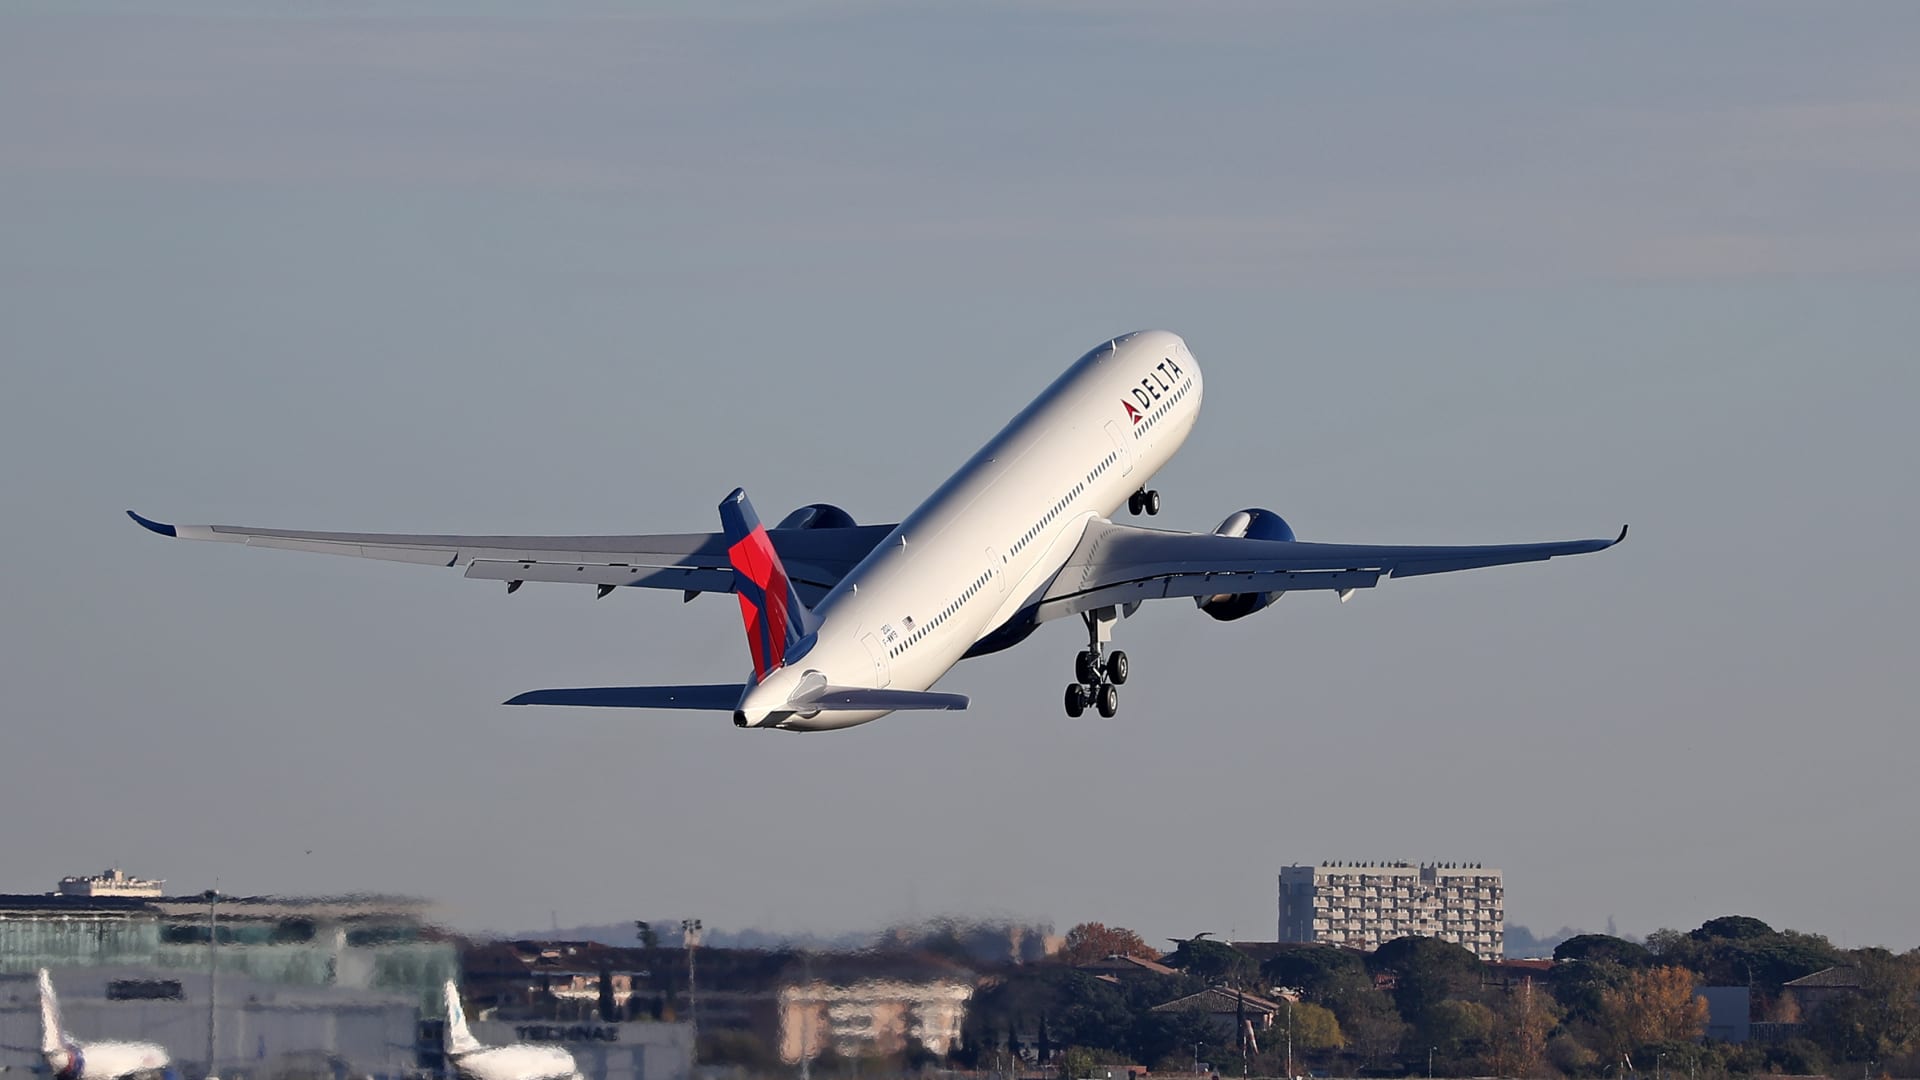 डेल्टा एयर लाइन्स तिमाही नुकसान दर्ज करती है लेकिन पीक ट्रैवल सीज़न के दृष्टिकोण के रूप में लाभ का अनुमान लगाती है